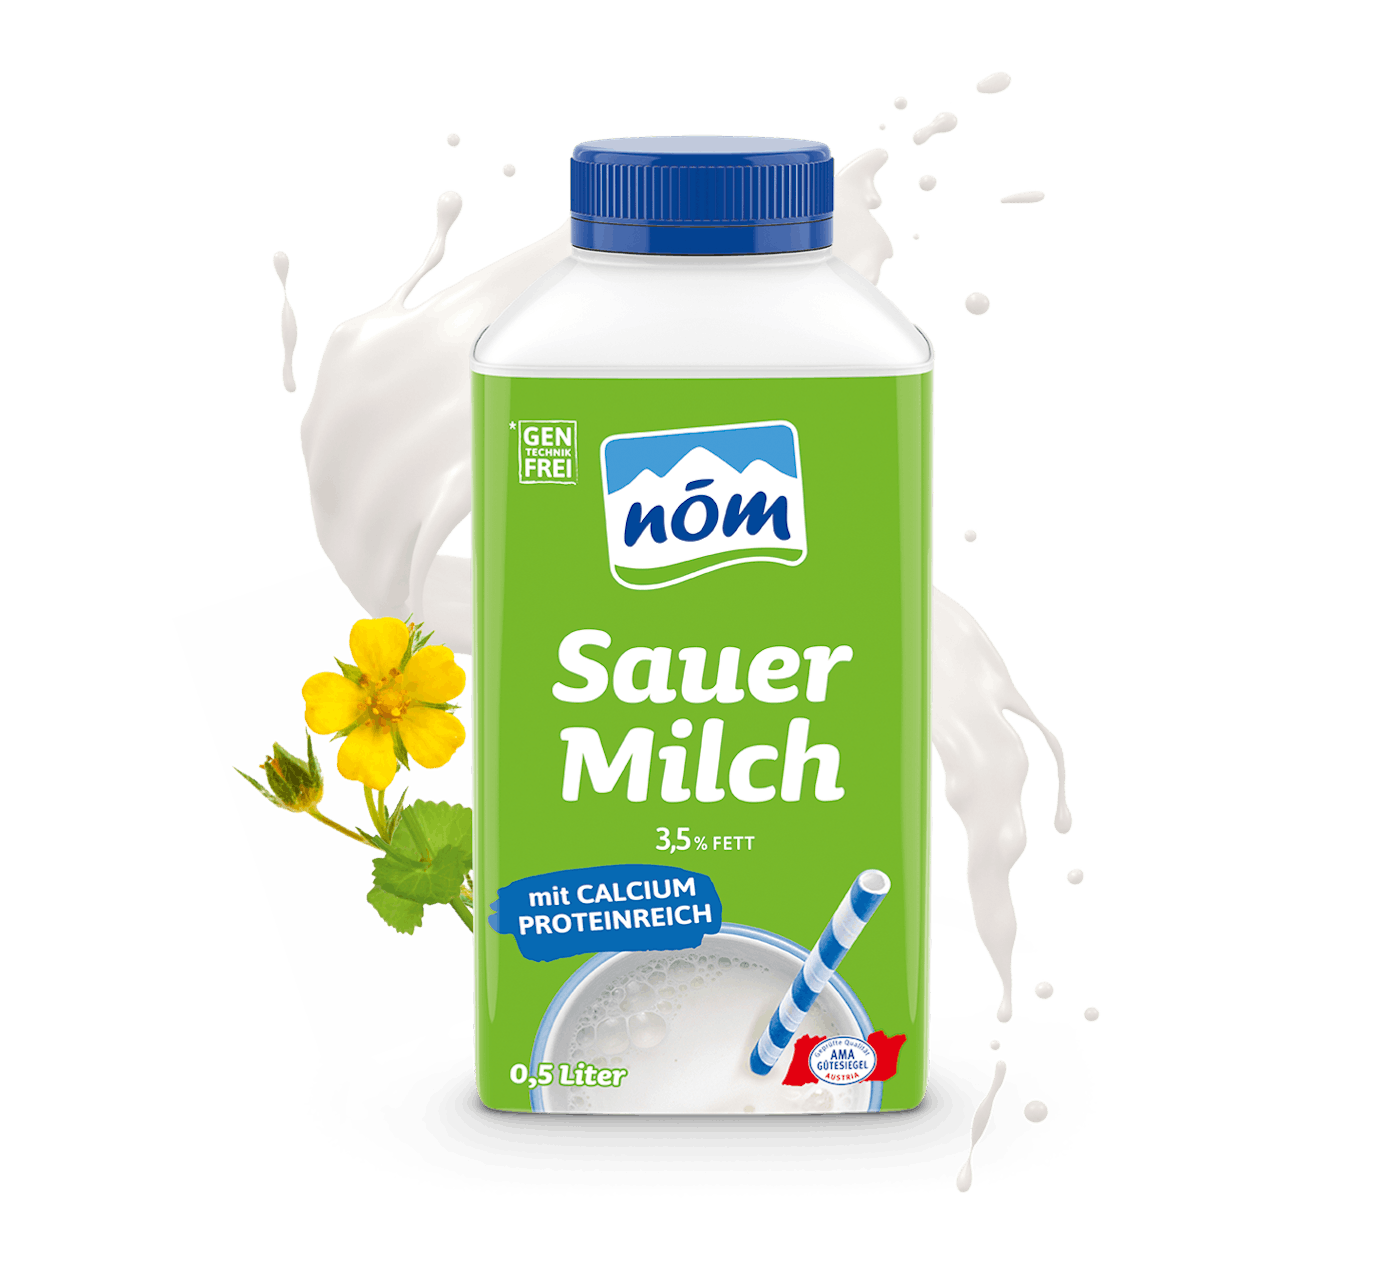 NÖM Sauermilch in 500 ml Tetra Pak mit Blumen